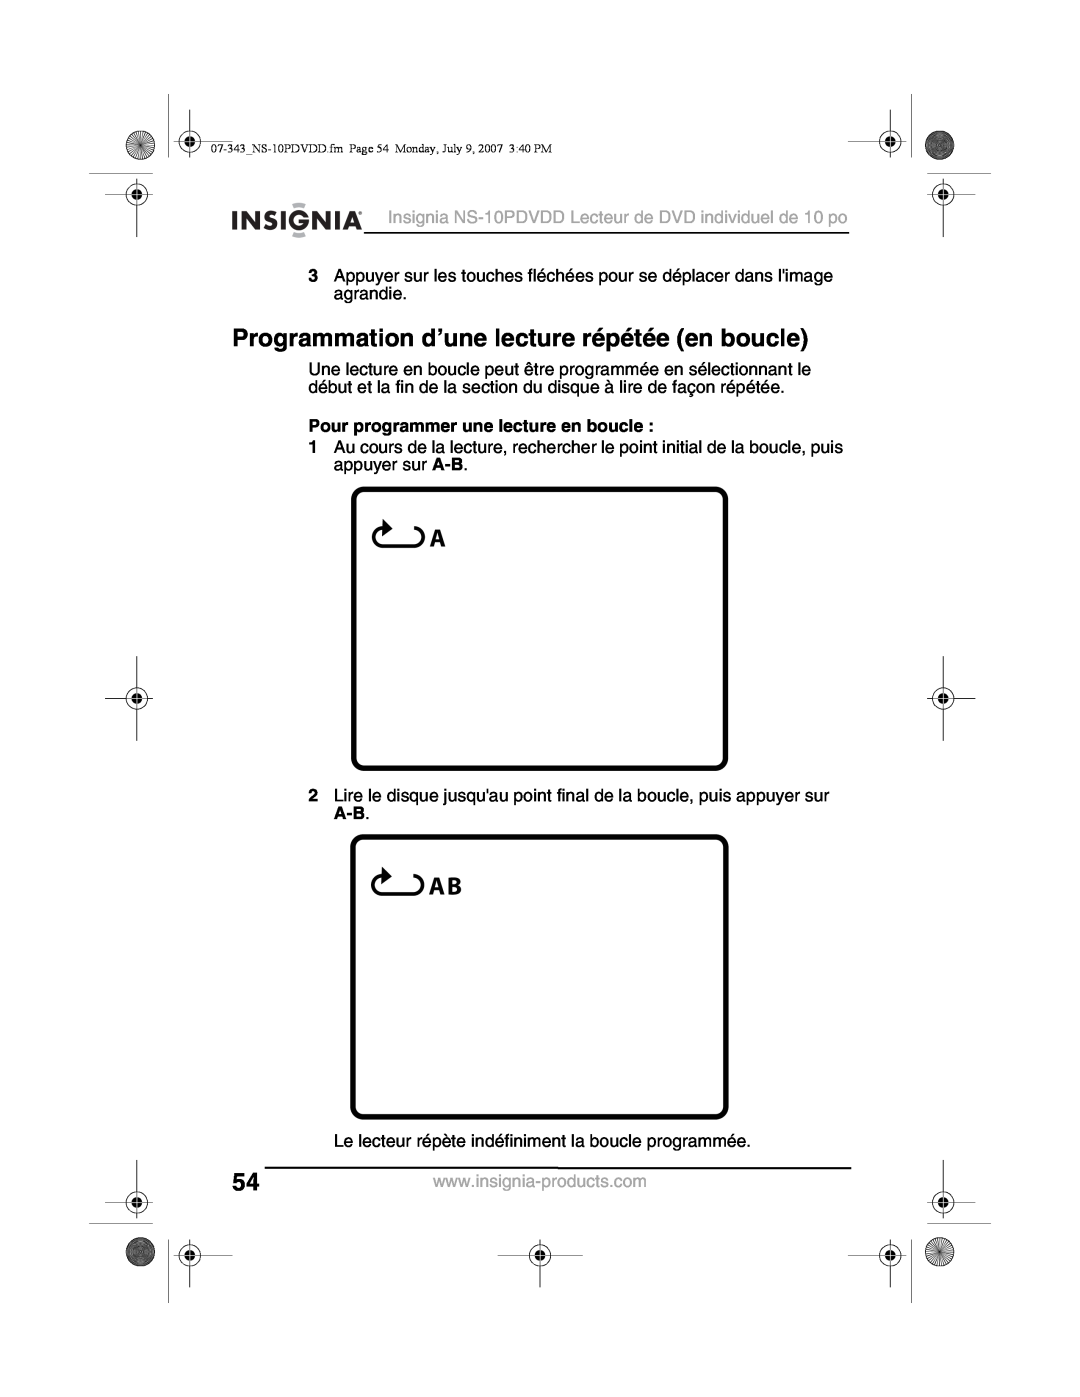 Insignia NS-10PDVDD manual Programmation d’une lecture répétée en boucle, Pour programmer une lecture en boucle 